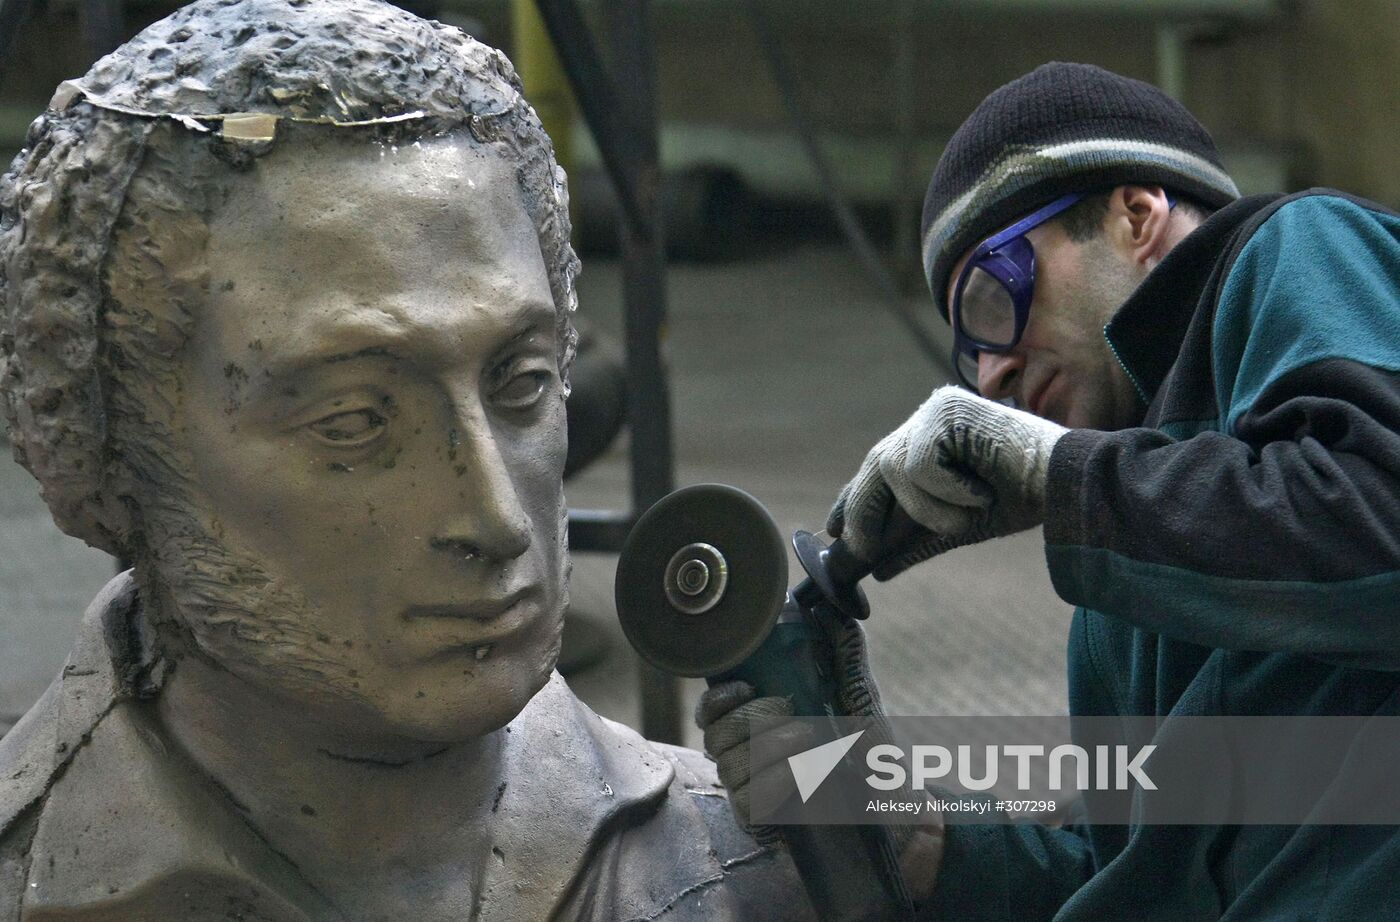 Alexander Pushkin bust cast at the LitArt factory